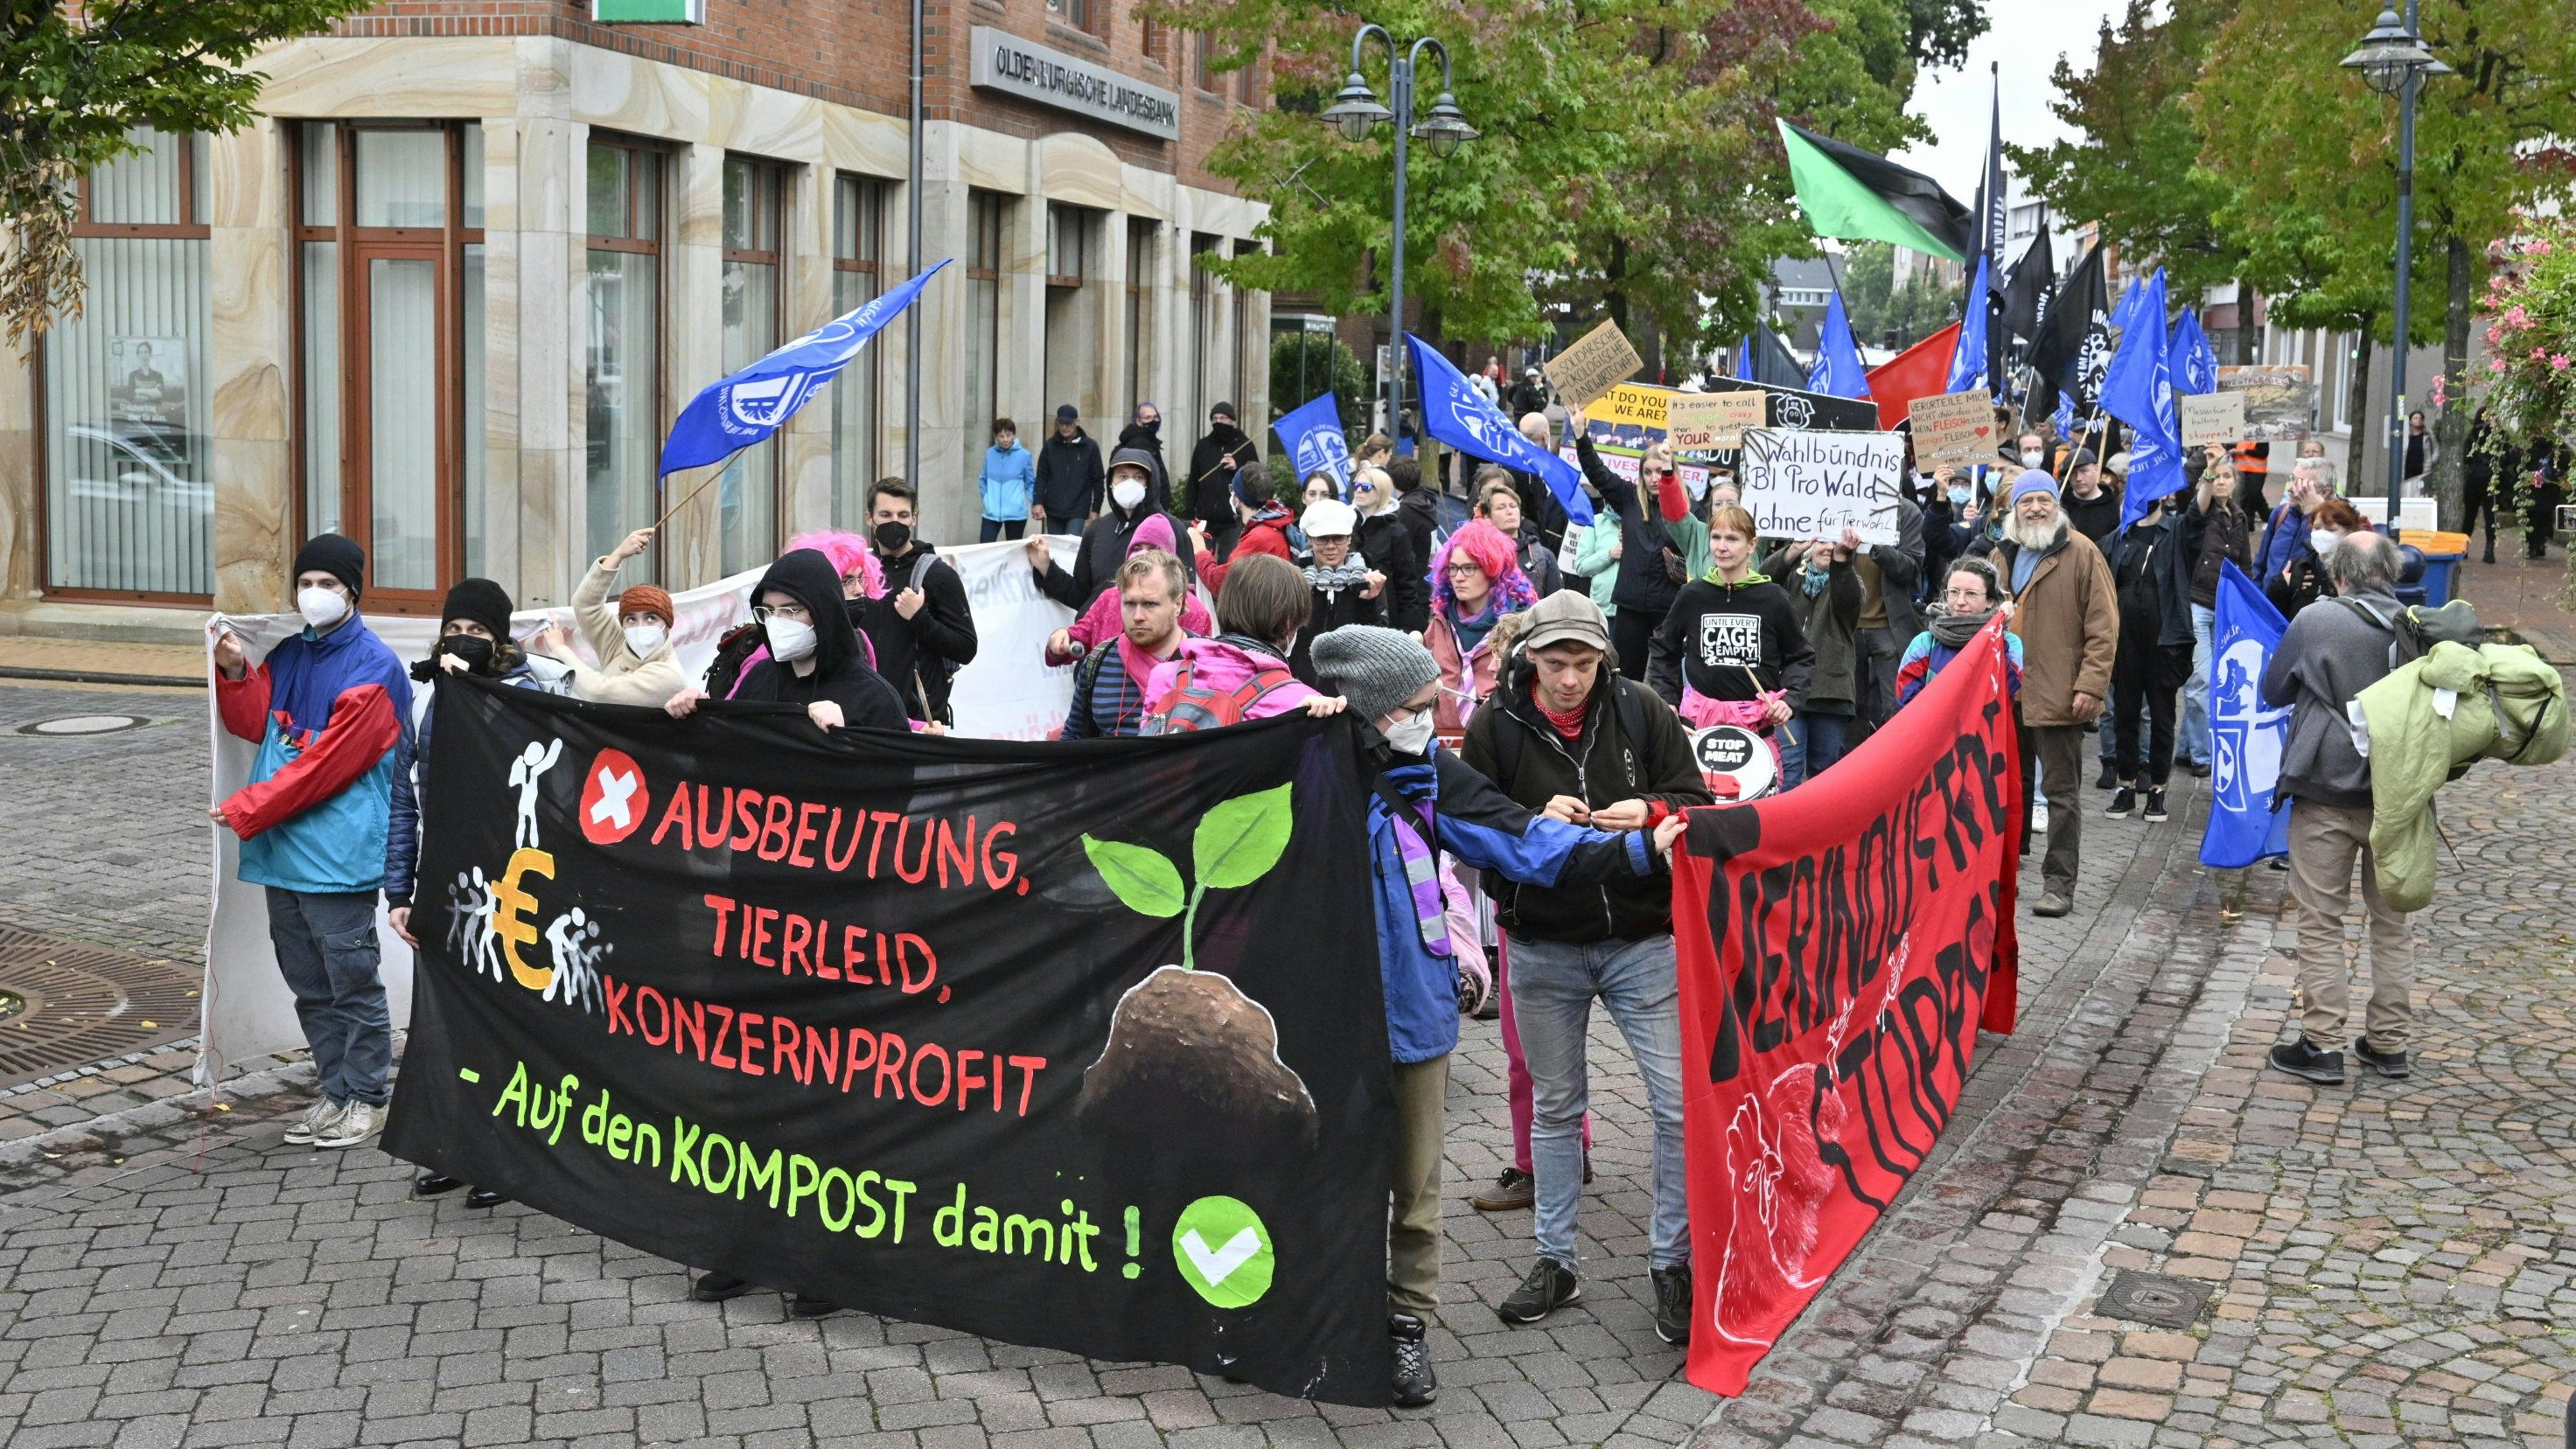 "Tierindustrie stoppen". Die Forderungen der Aktivisten bei der Demo in Vechta sind kompromisslos. Foto: M. Niehues